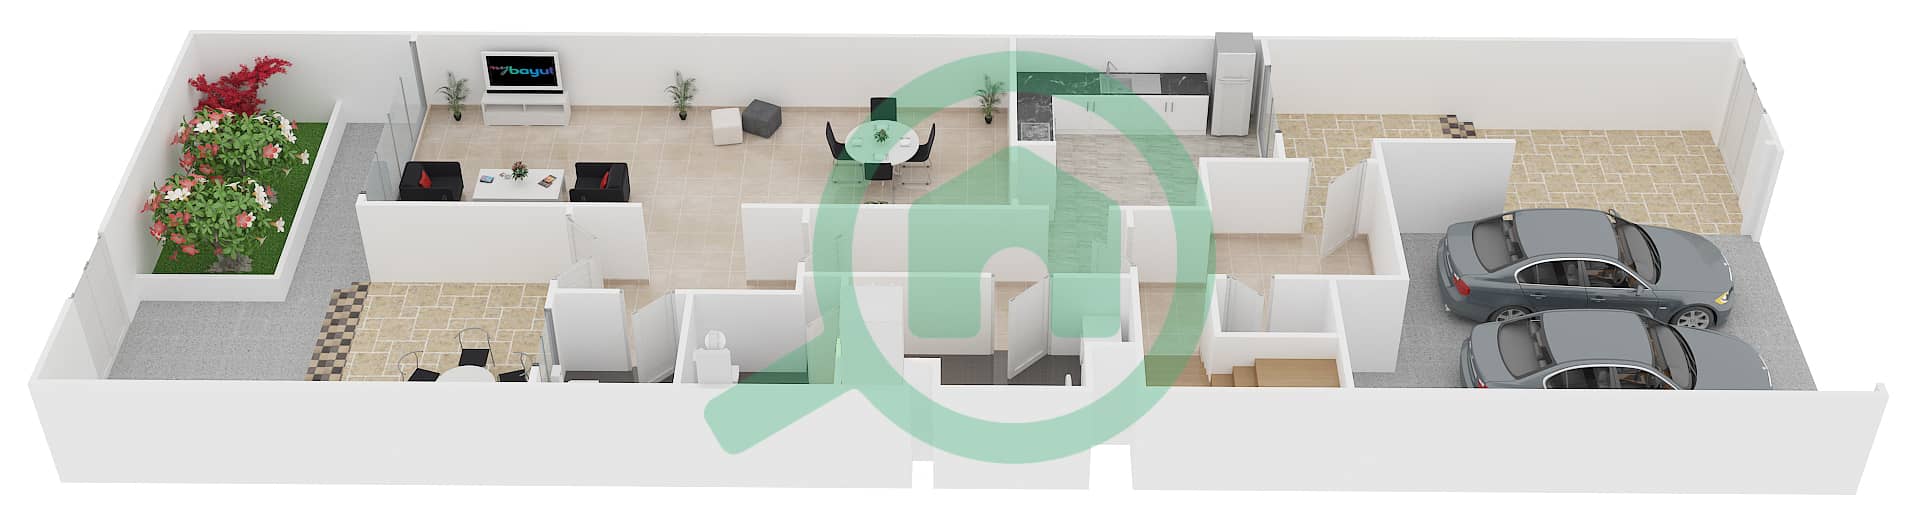 Shamal Terraces - 3 Bedroom Villa Type D Floor plan interactive3D